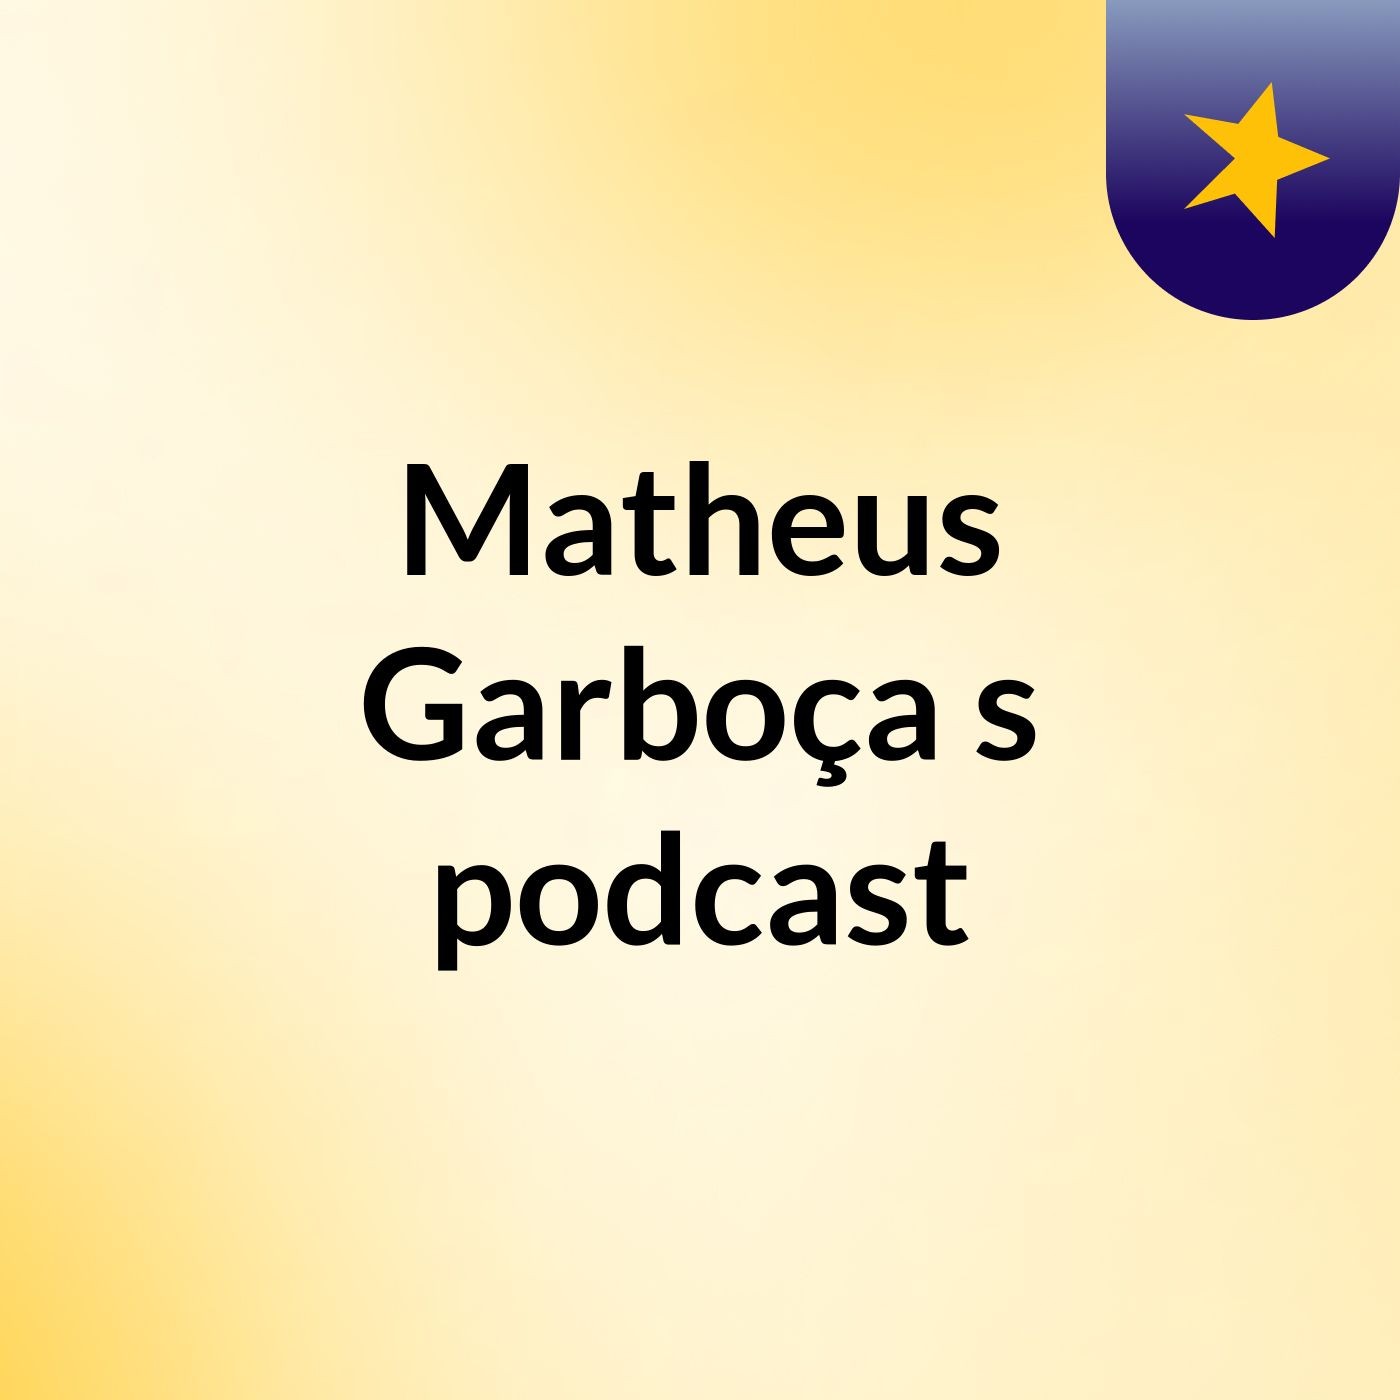 Matheus Garboça's podcast